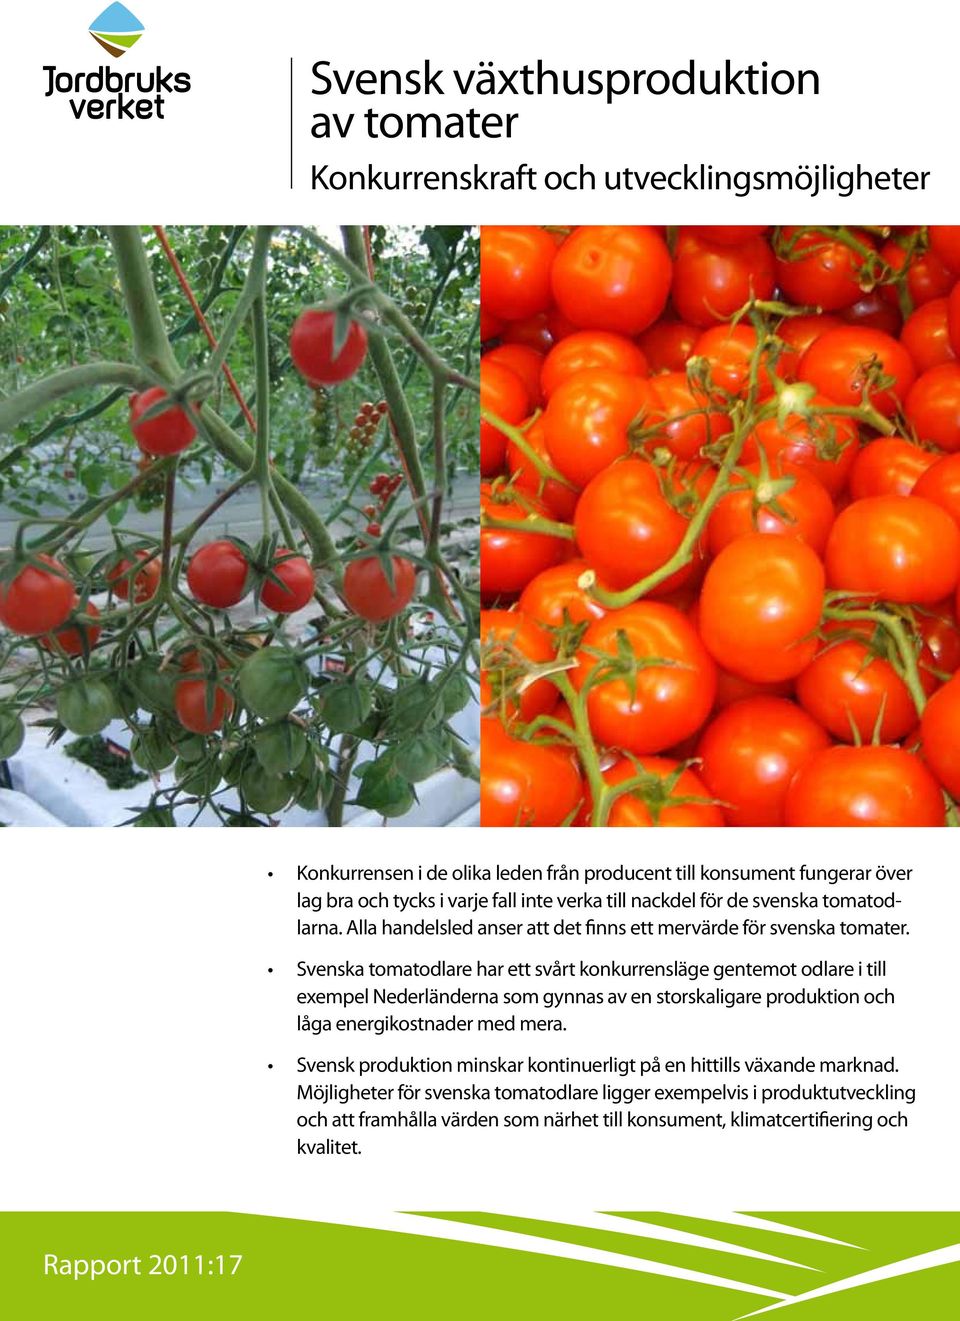 Svenska tomatodlare har ett svårt konkurrensläge gentemot odlare i till exempel Nederländerna som gynnas av en storskaligare produktion och låga energikostnader med mera.